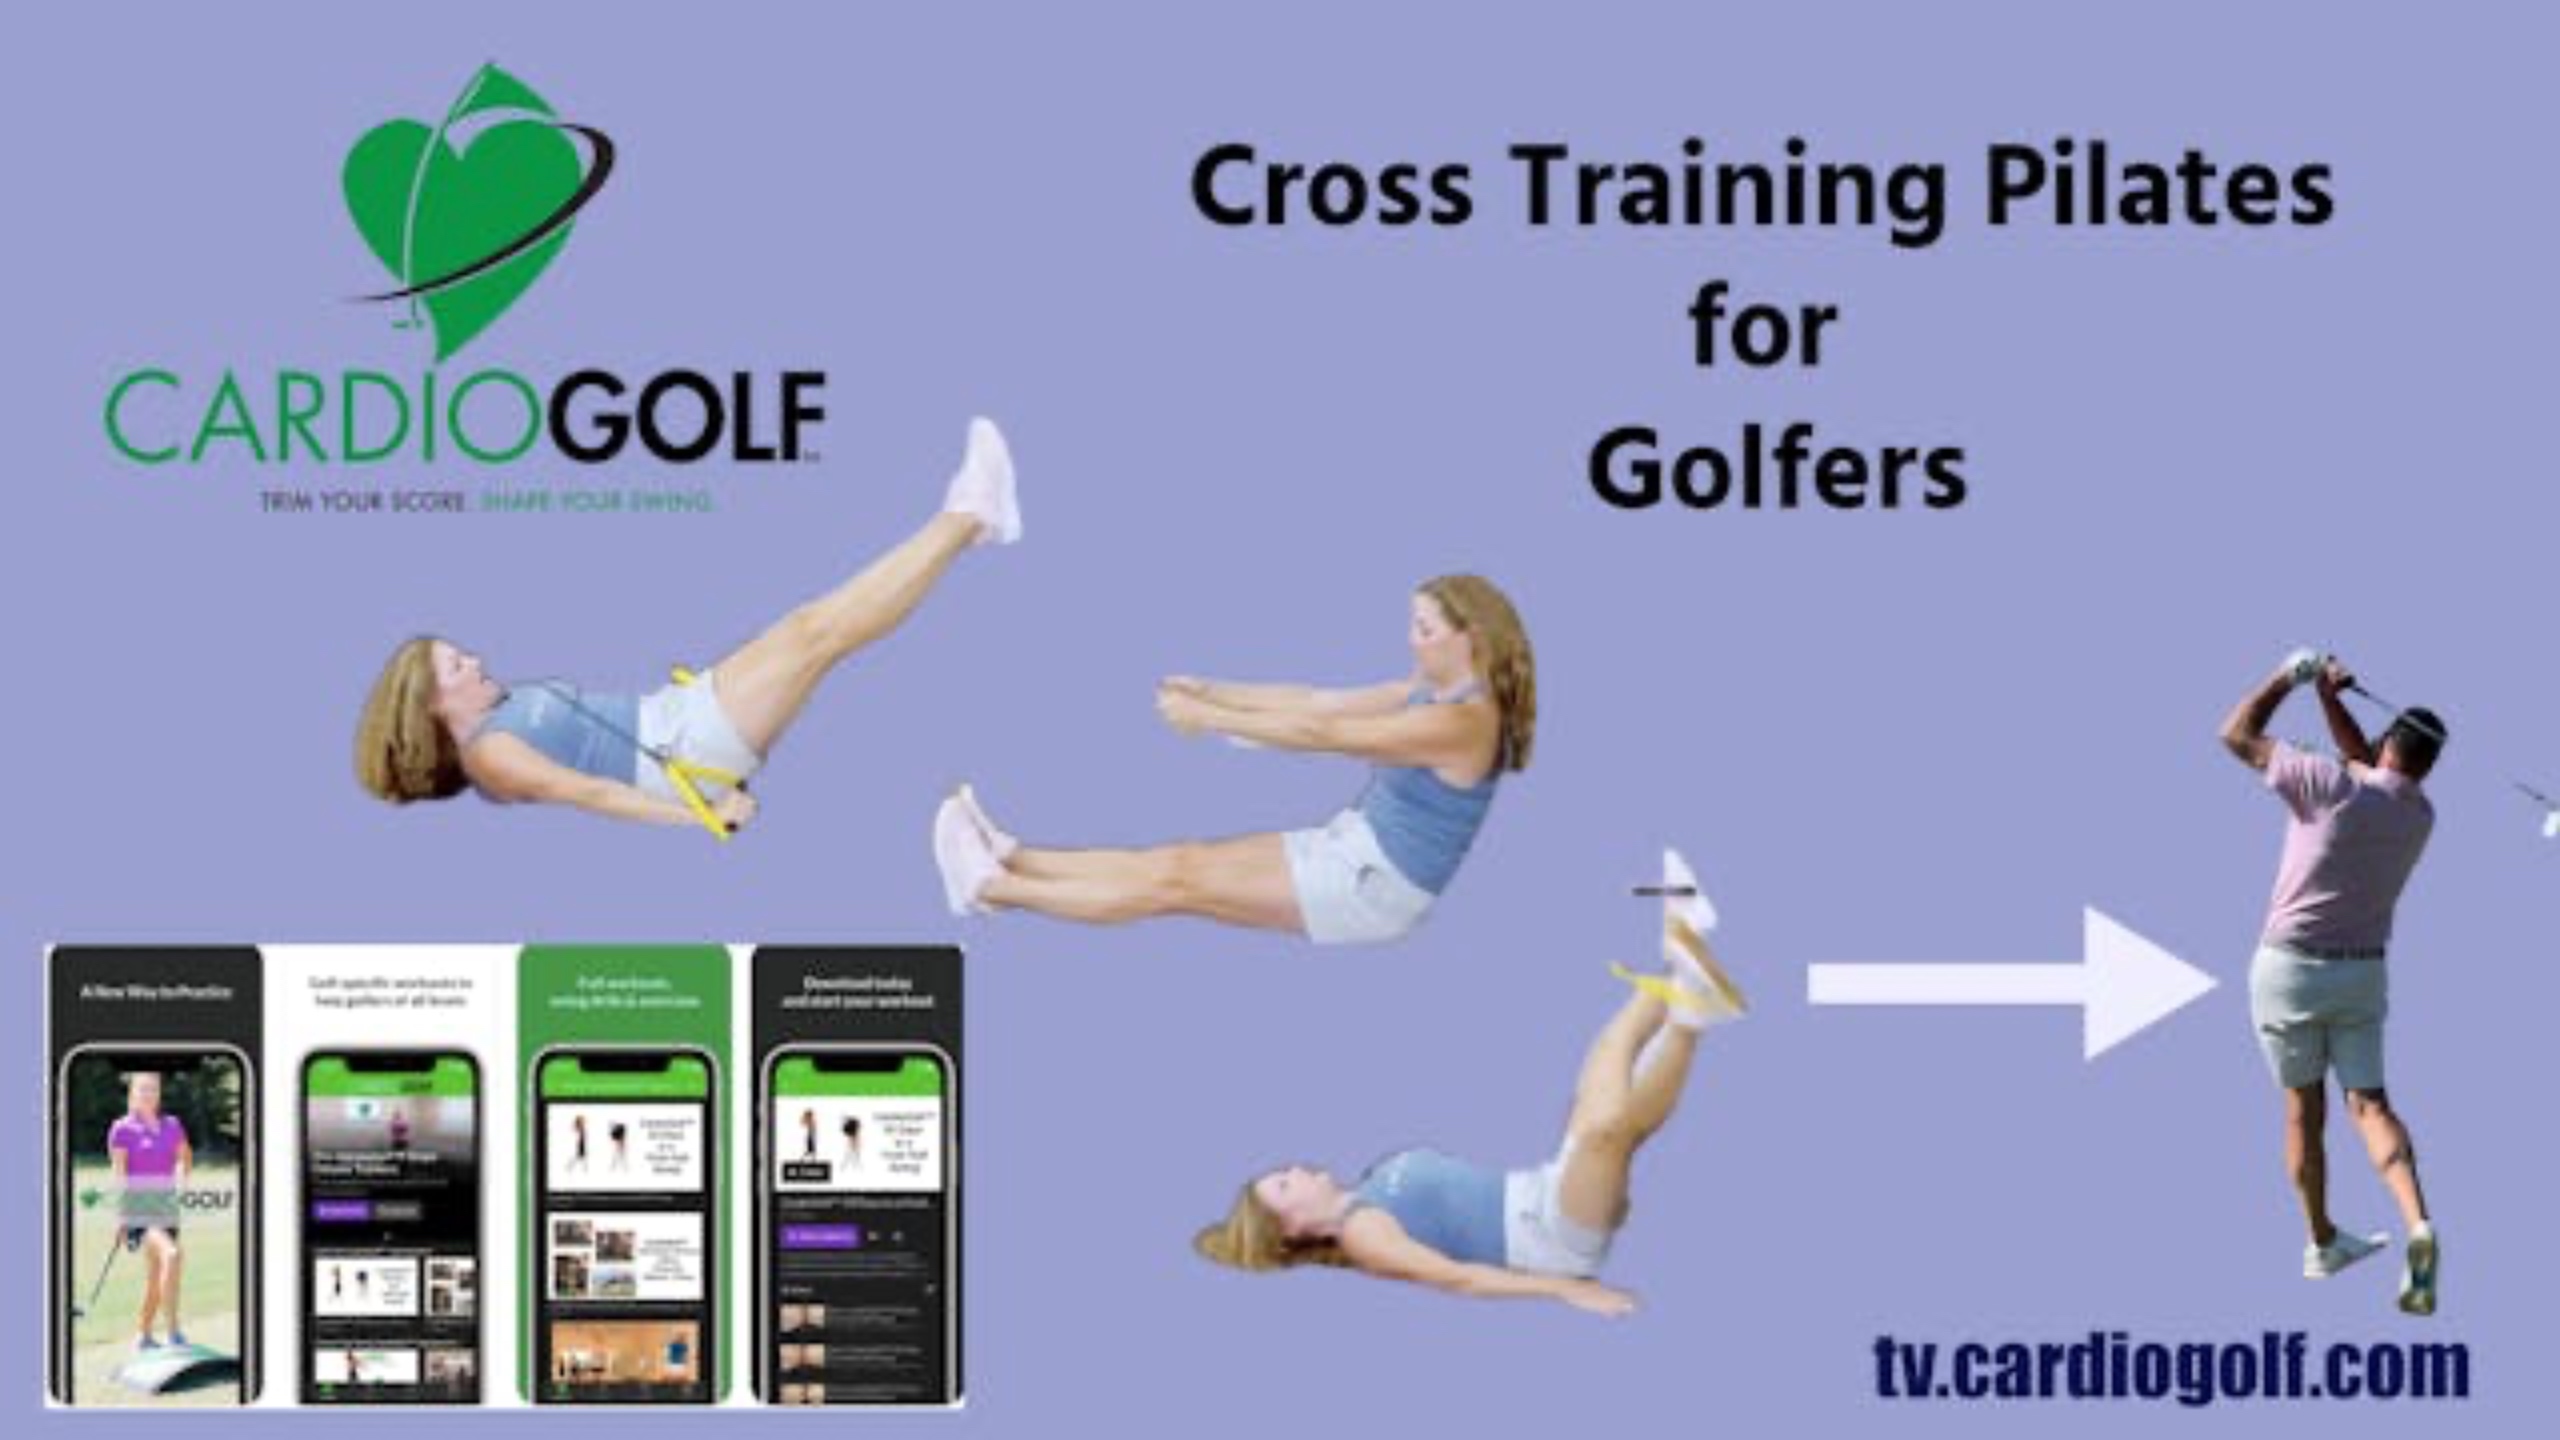 CardioGolf® Cross Training Pilates for Golfers. CardioGolf.com